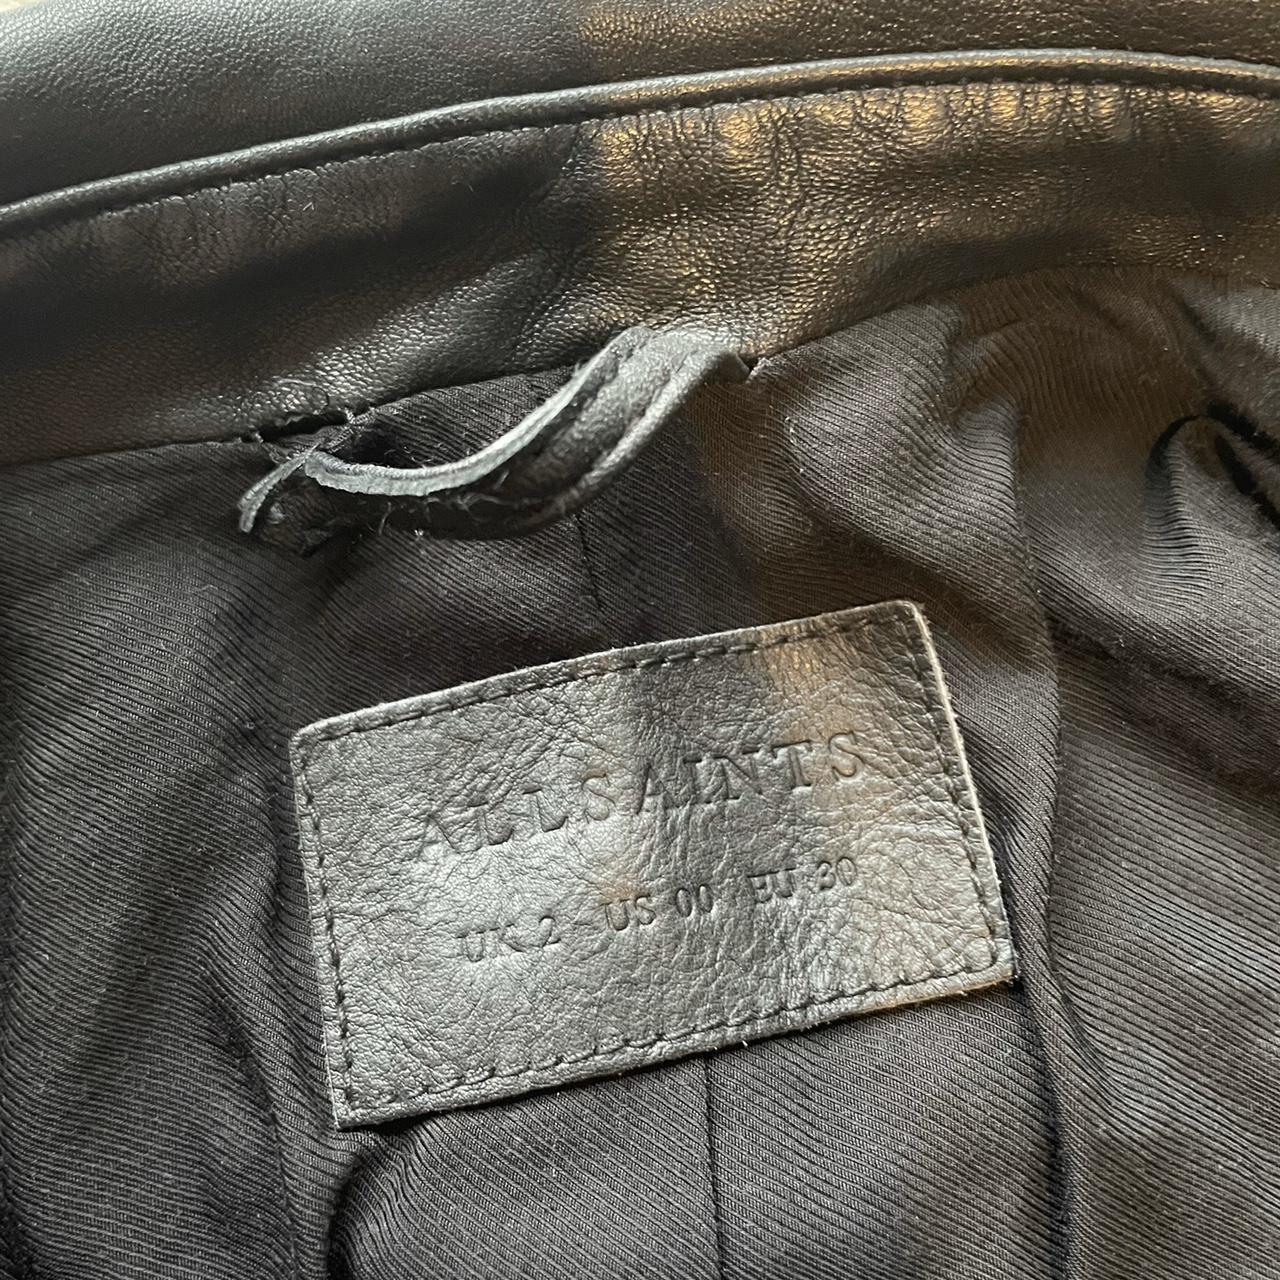 ALLSAINTS Leather Biker Jacket Rare piece,... - Depop